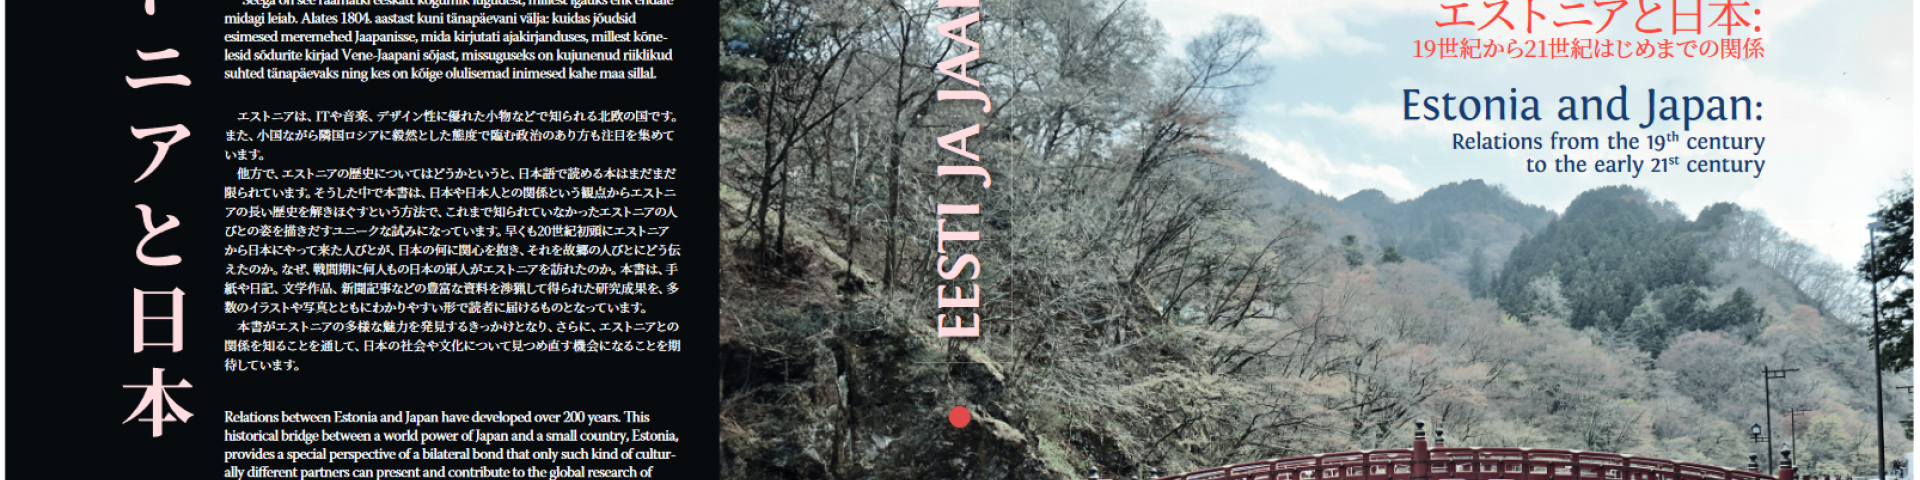 Eesti ja Jaapan raamatu kaanekujundus